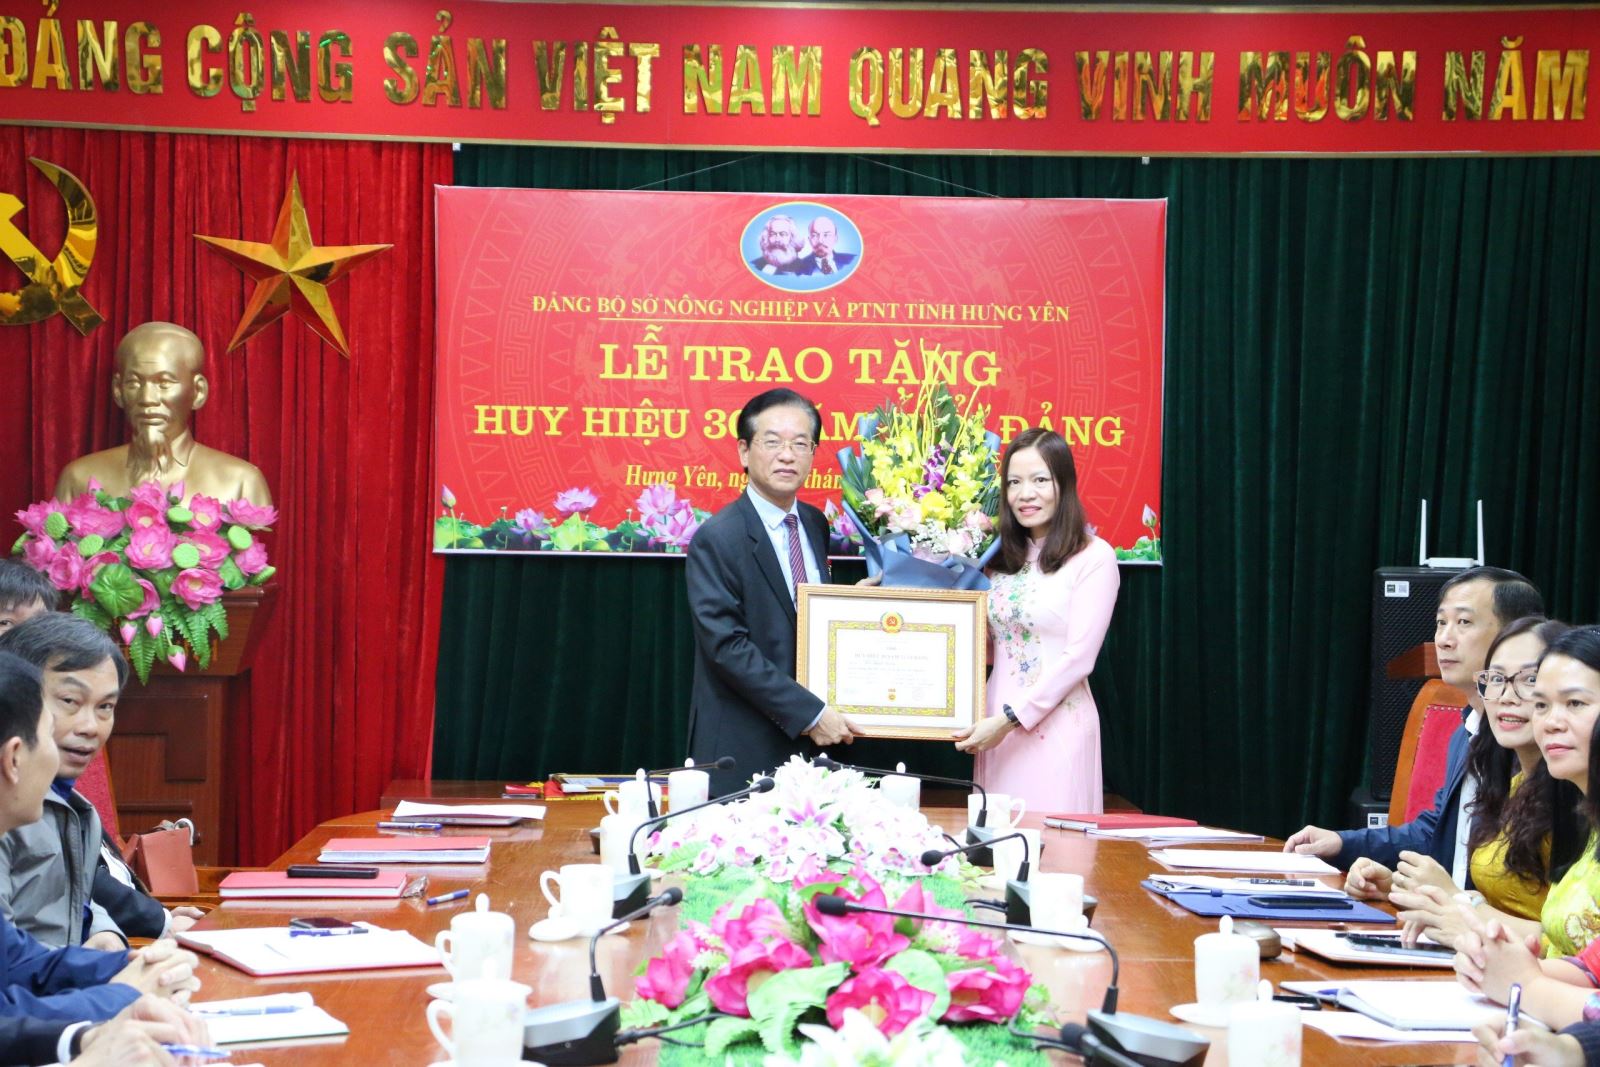 Lễ trao tặng Huy hiệu 30 năm tuổi Đảng (đợt 07/11/2023) tại Đảng bộ Sở Nông nghiệp và Phát triển nông thôn